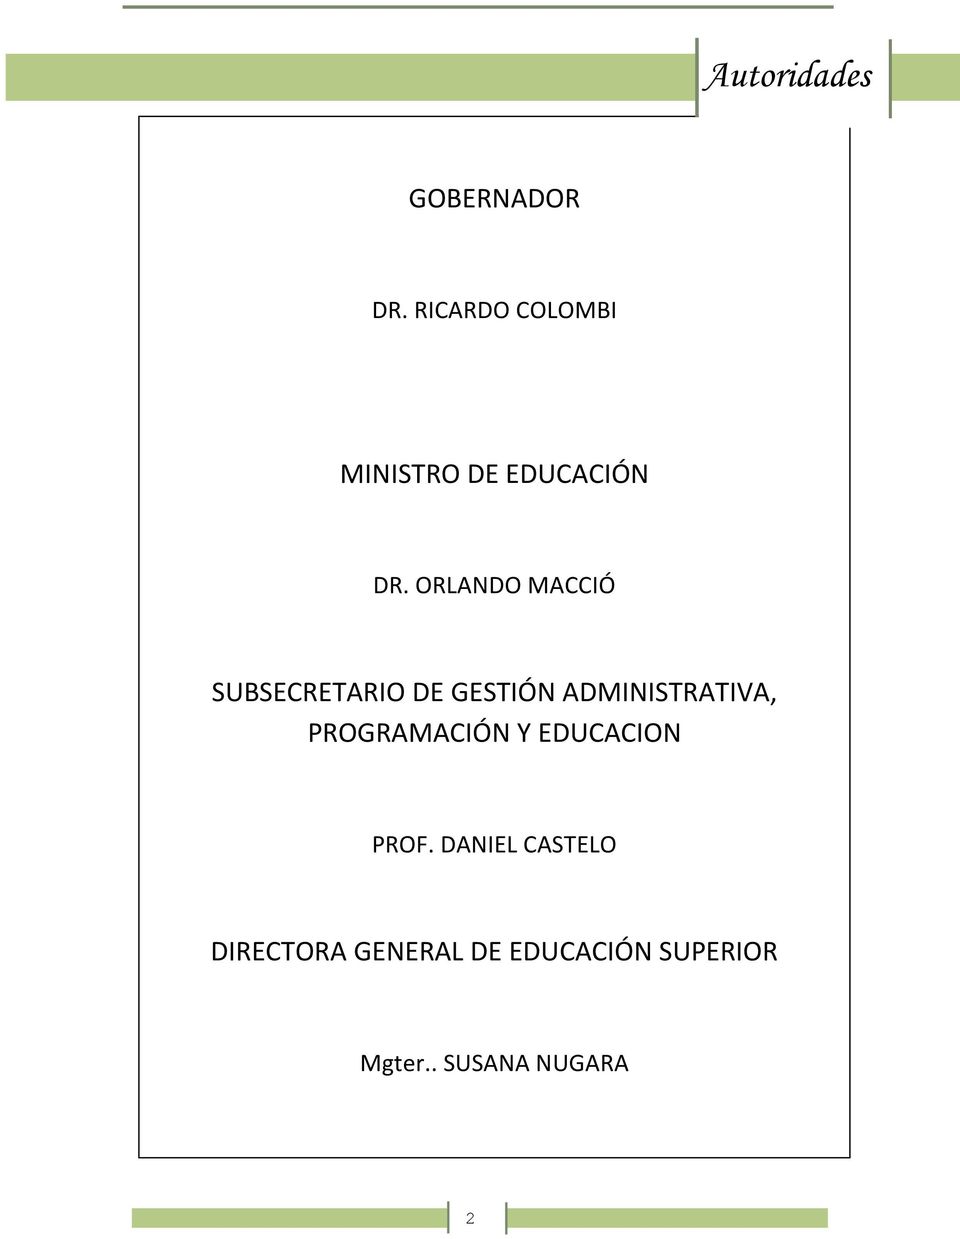 DANIEL CASTELO DIRECTORA GENERAL DE EDUCACIÓN SUPERIOR :: Coordinación Jurisdiccional